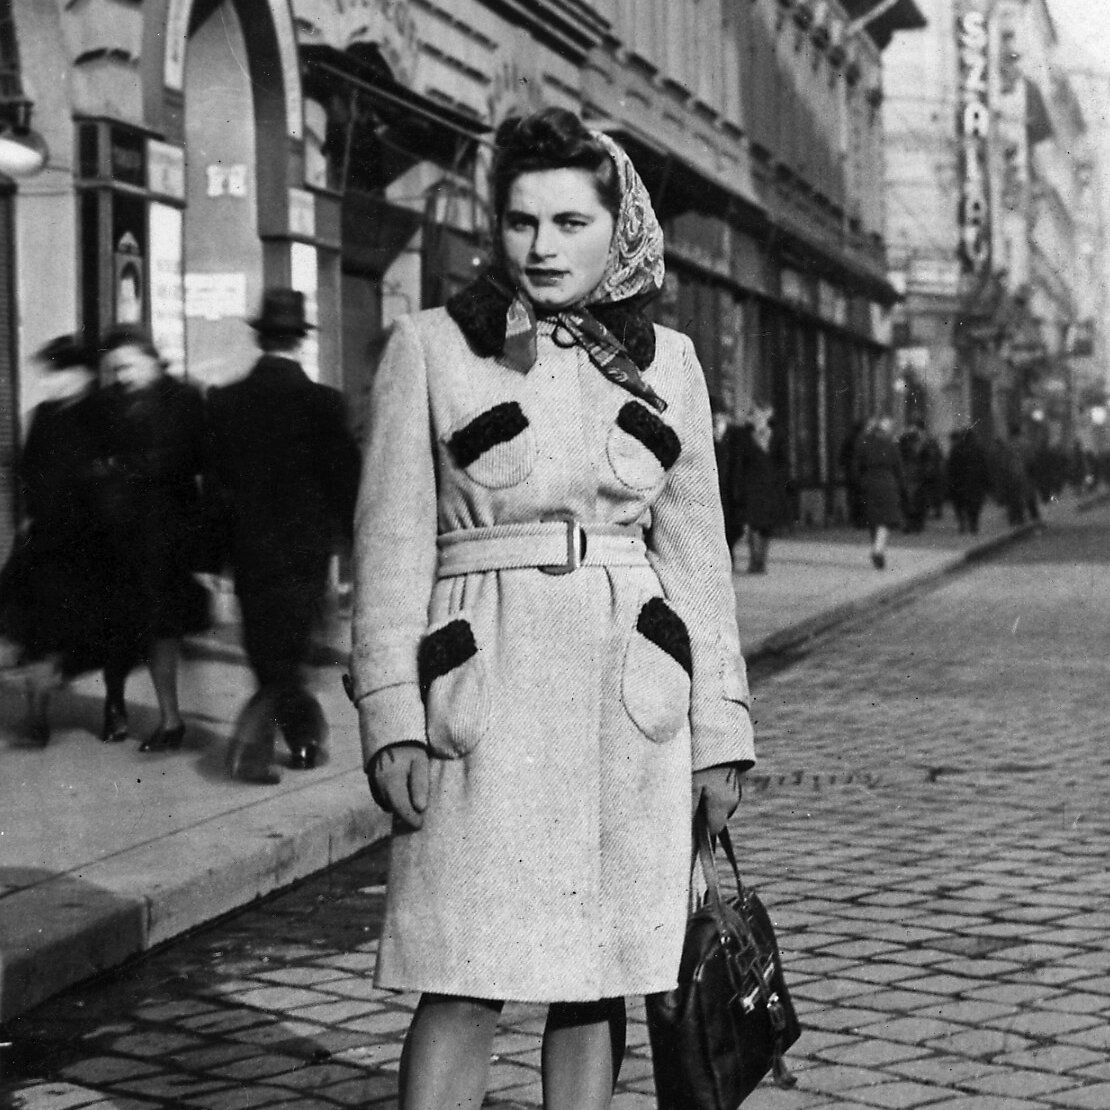 二戰期間勇敢的猶太女性反抗者 Renia Kukiełka，1944 年攝於布達佩斯。